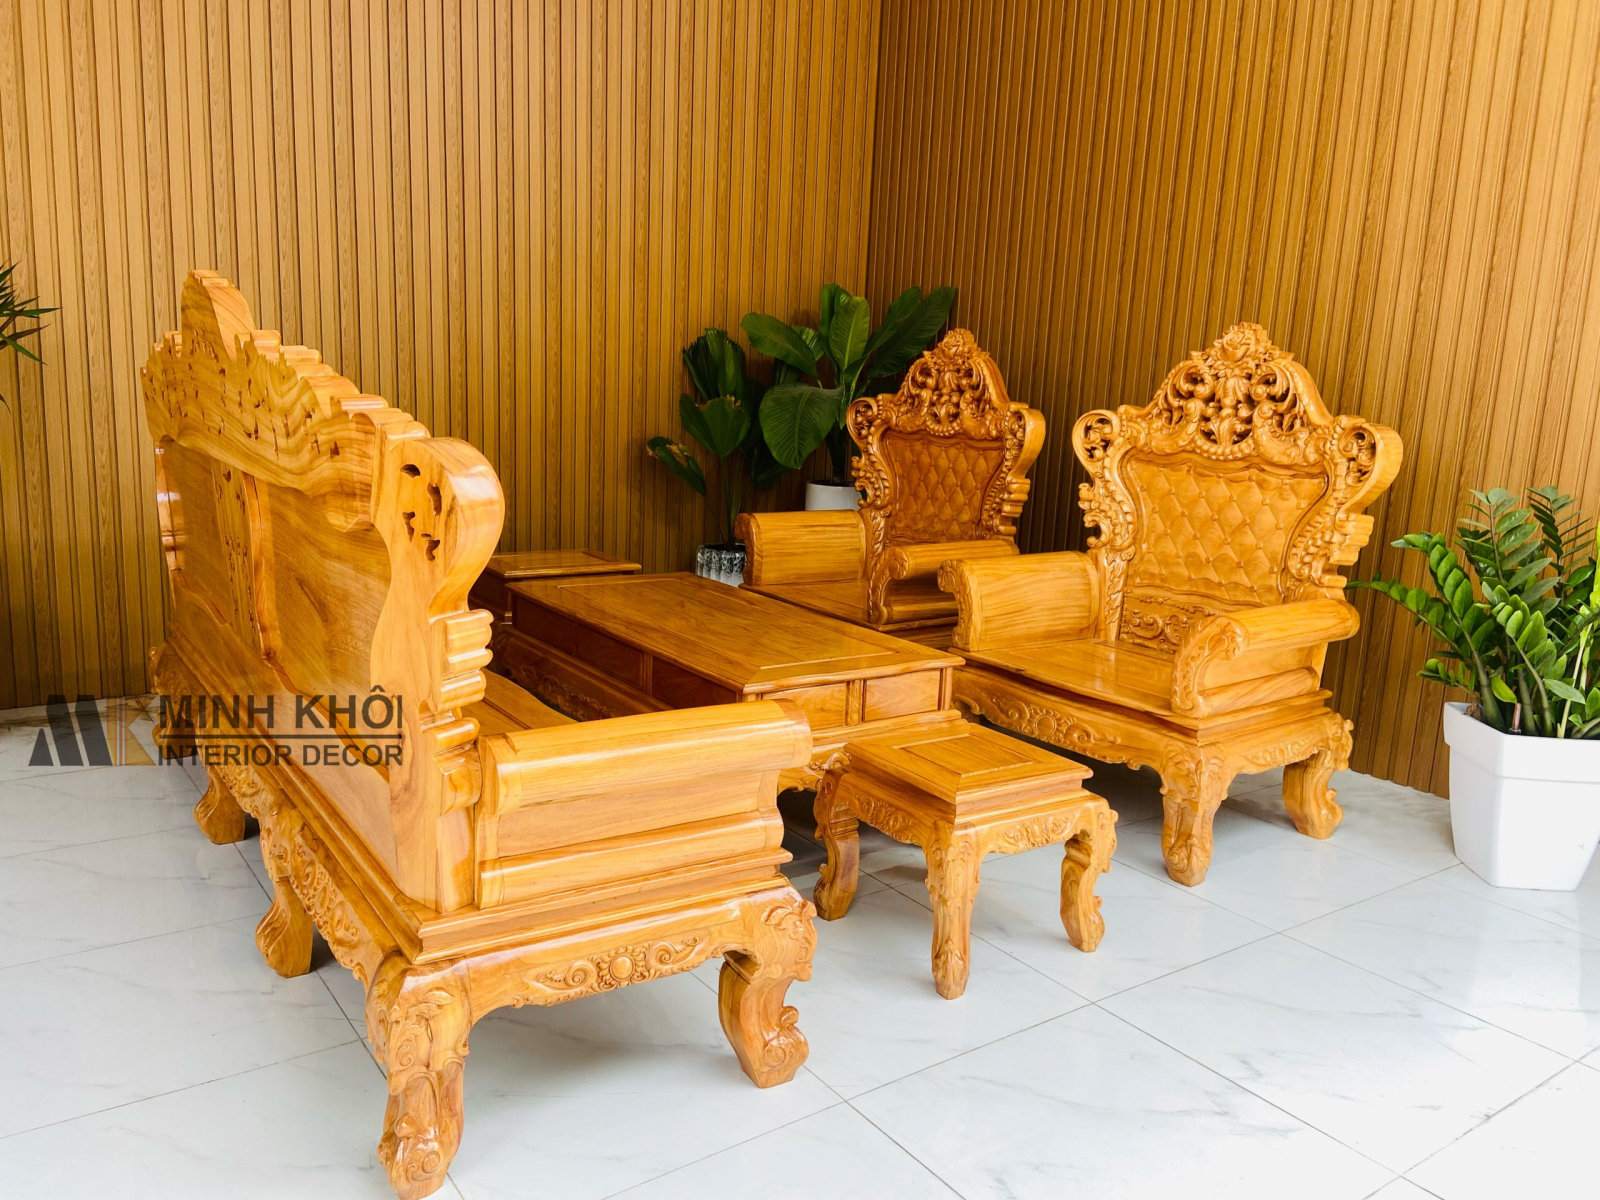 Bàn ghế gỗ phòng khách Hoàng Anh Gia Lai đã trở thành lựa chọn tuyệt vời cho các gia đình vào năm